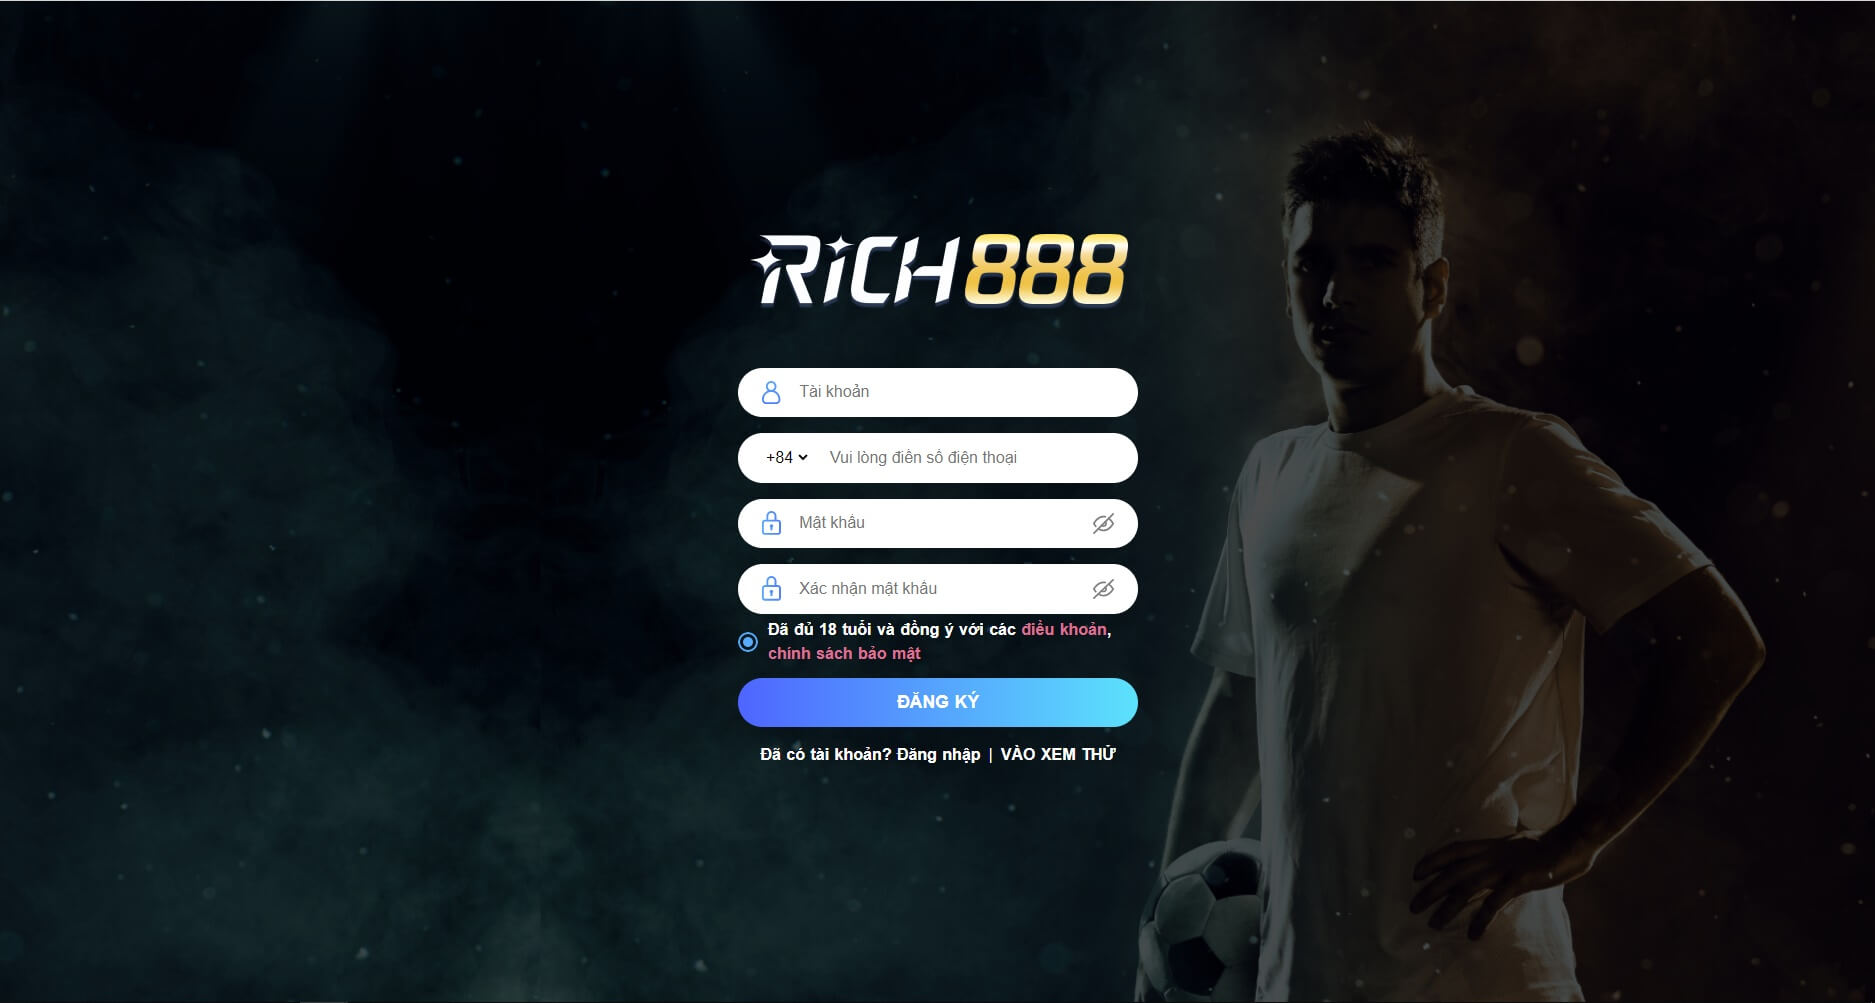 Hướng dẫn đăng ký và đăng nhập tài khoản tại Rich888